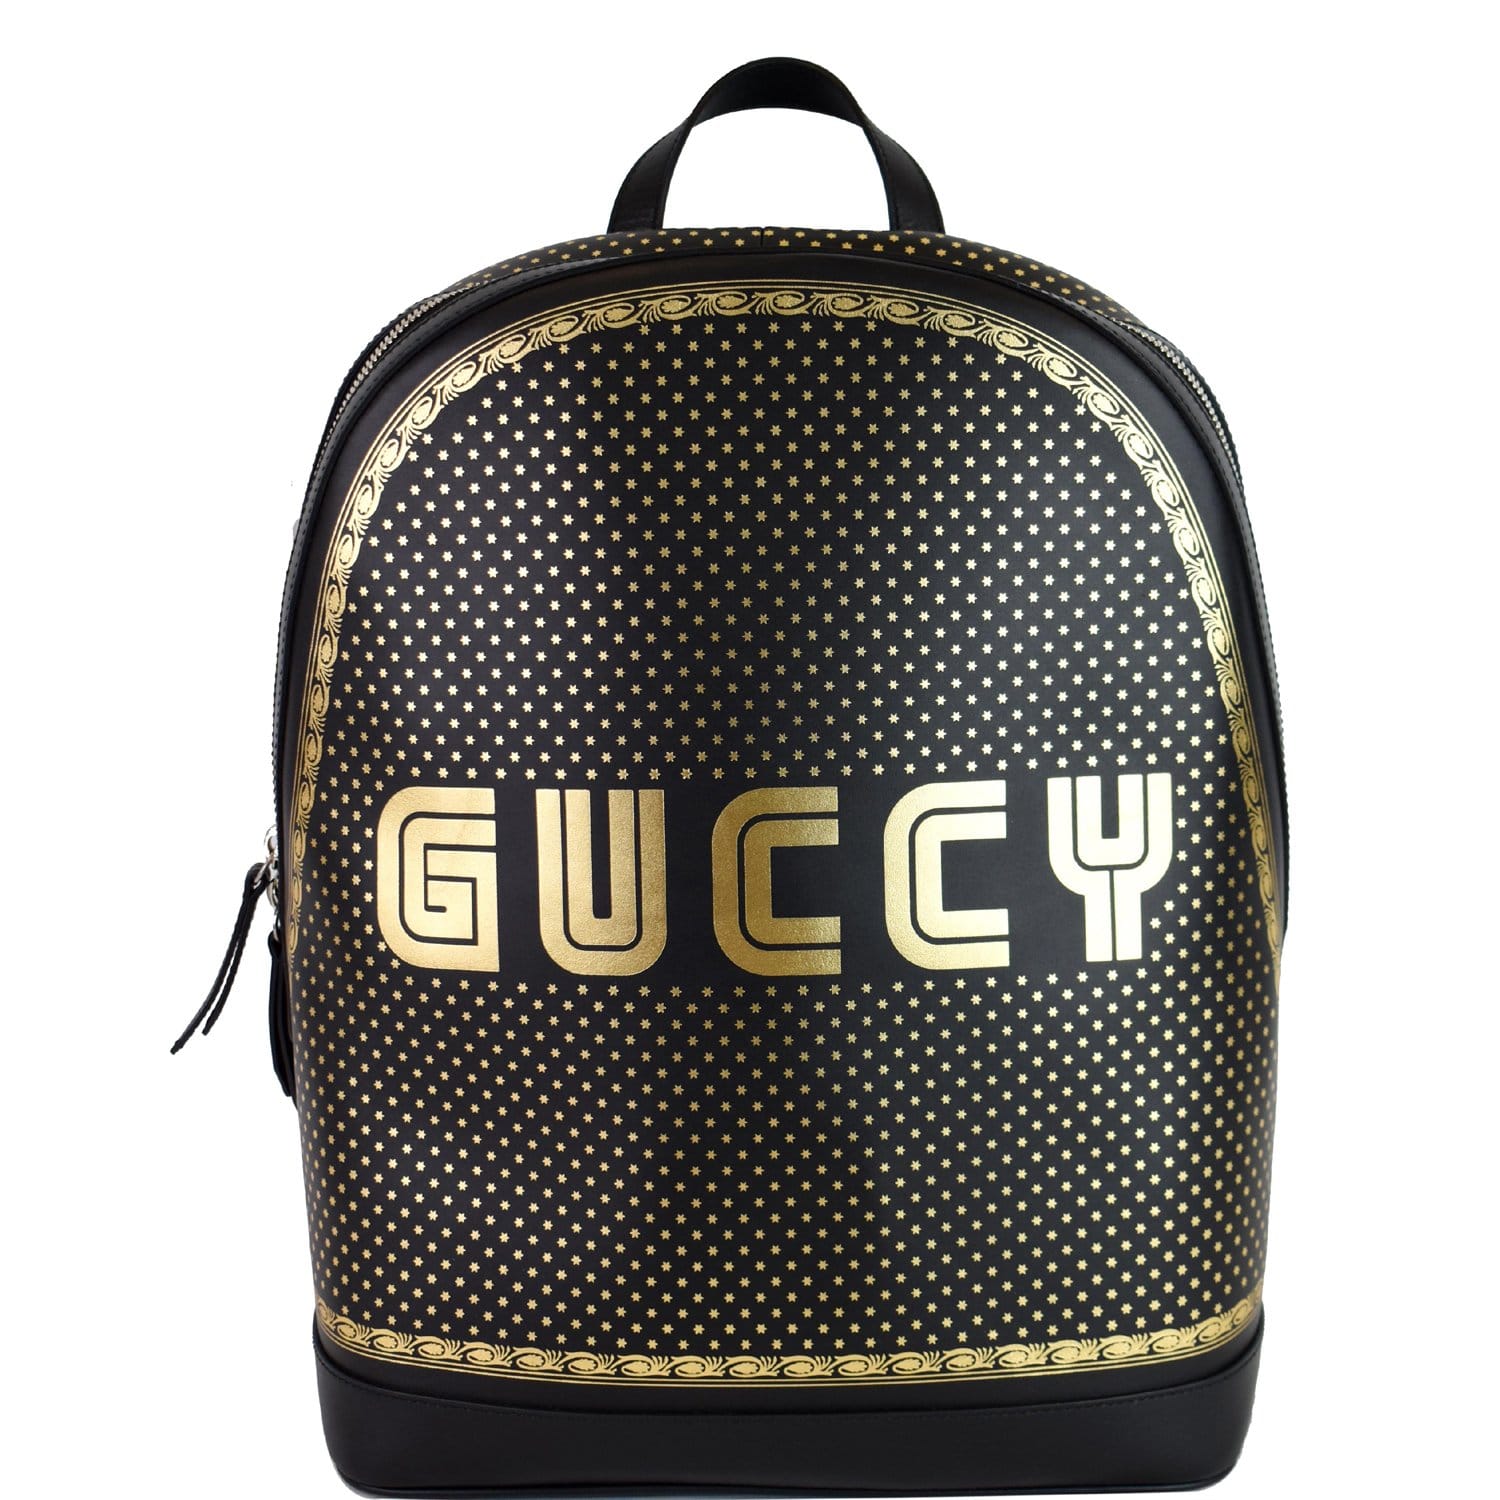 GUCCI Leather Backpack Bag Black 419584 Sale